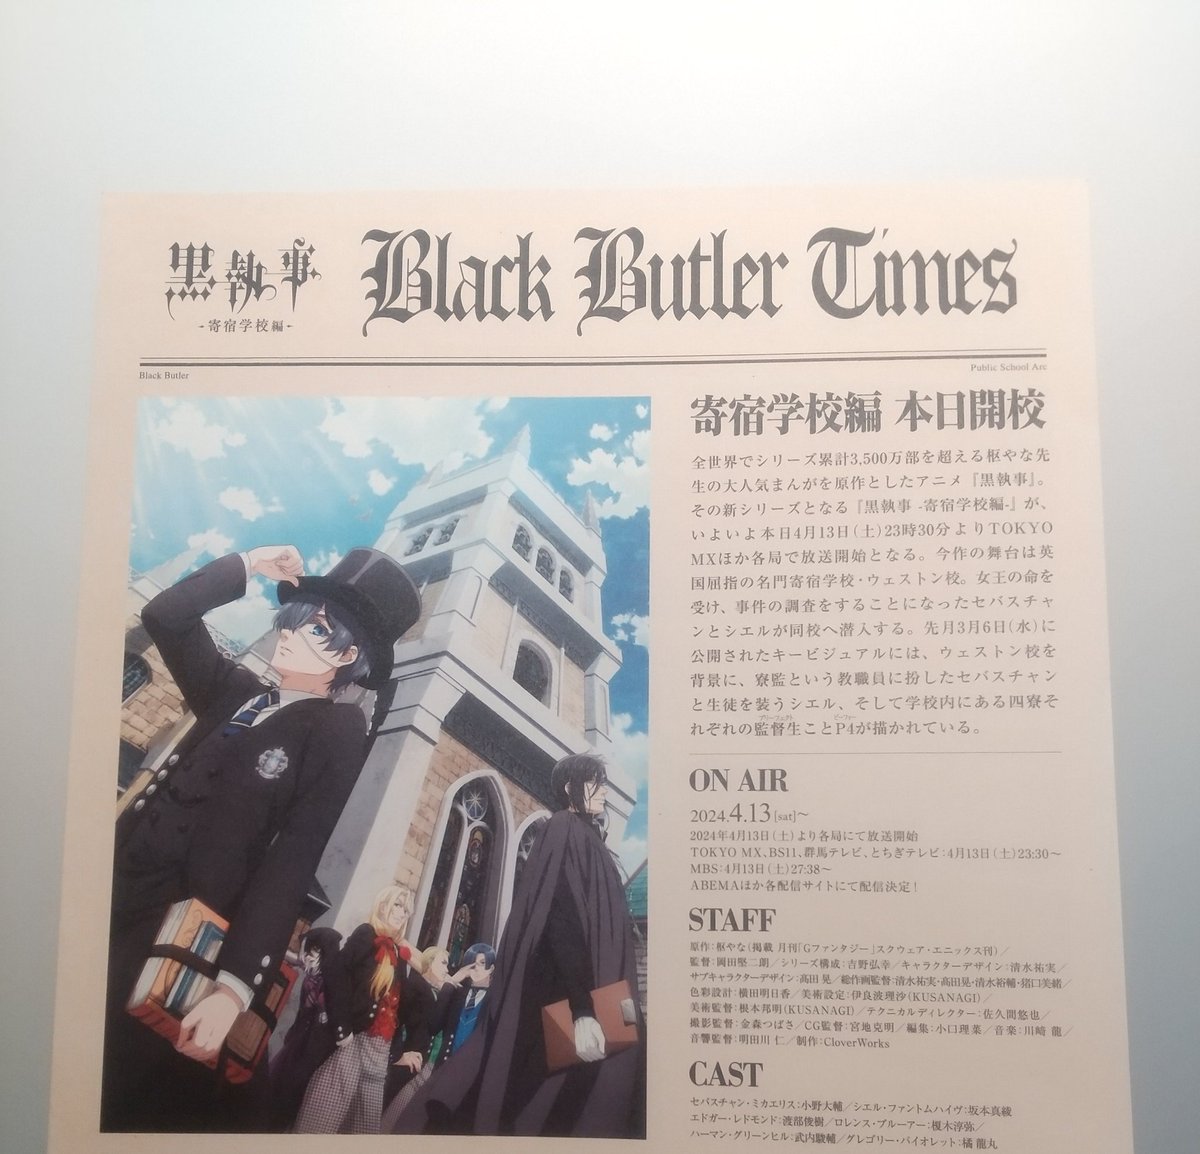 #黒執事 新聞
特製フライヤー
『Black Butler Times 』
渋谷アニメイトさんでいただいてきました😆✨
19:30の時点でまだありました☺️

普段はちいかわ垢だけど、
黒執事は私が初めて好きになったアニメなので🥰
初期の2008年からずーっと推しです😌💓
アニメ楽しみ😍

#BlackBatler #kuroshitsuji